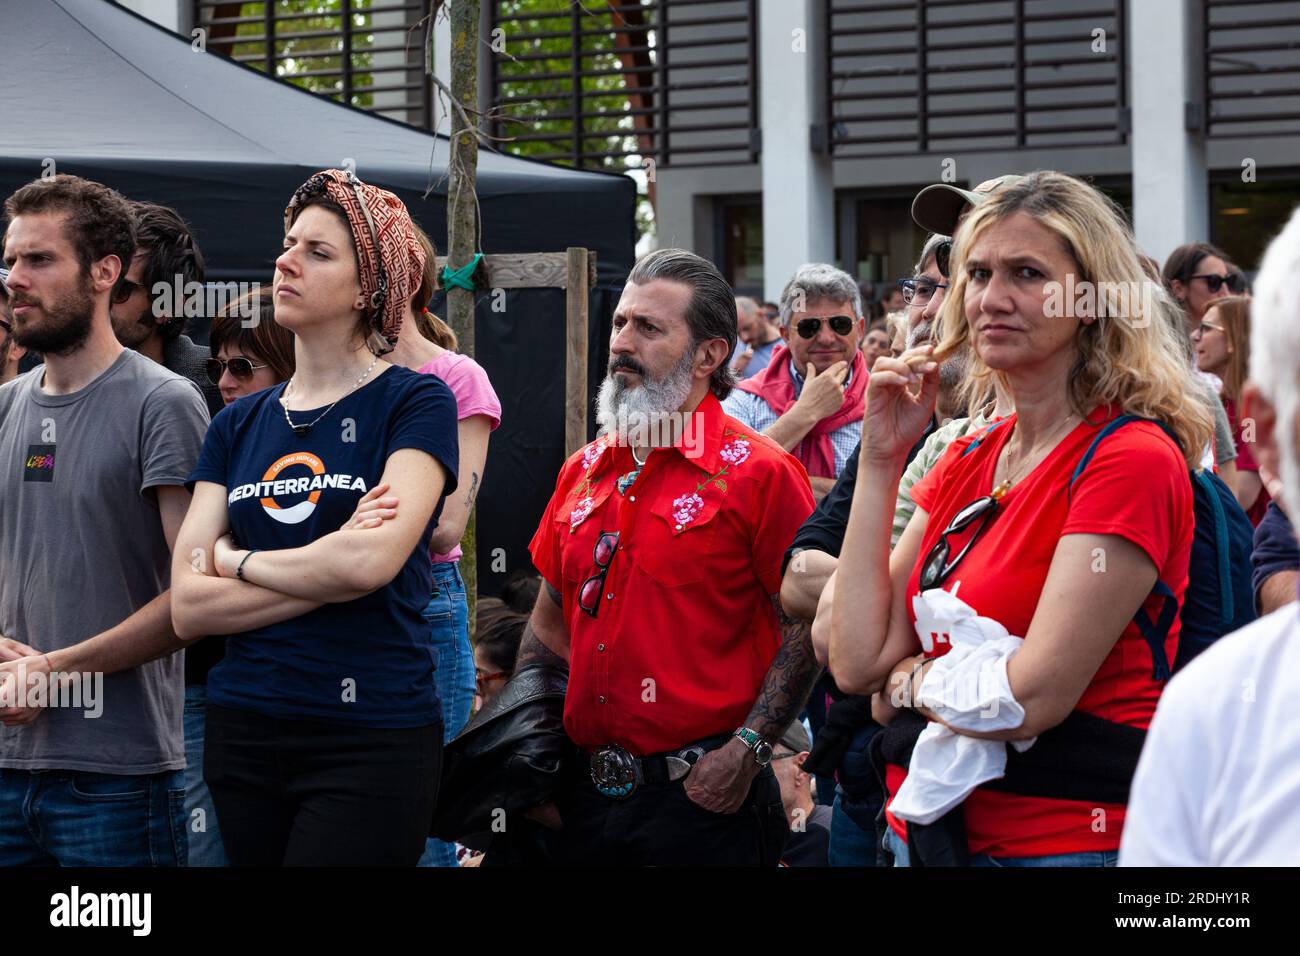 Gattatico, Reggio Emilia, Italie - 25 avril 2023 : un rassemblement de supporters de gauche vêtus de chemises rouges écoute attentivement les orateurs pendant le TH Banque D'Images